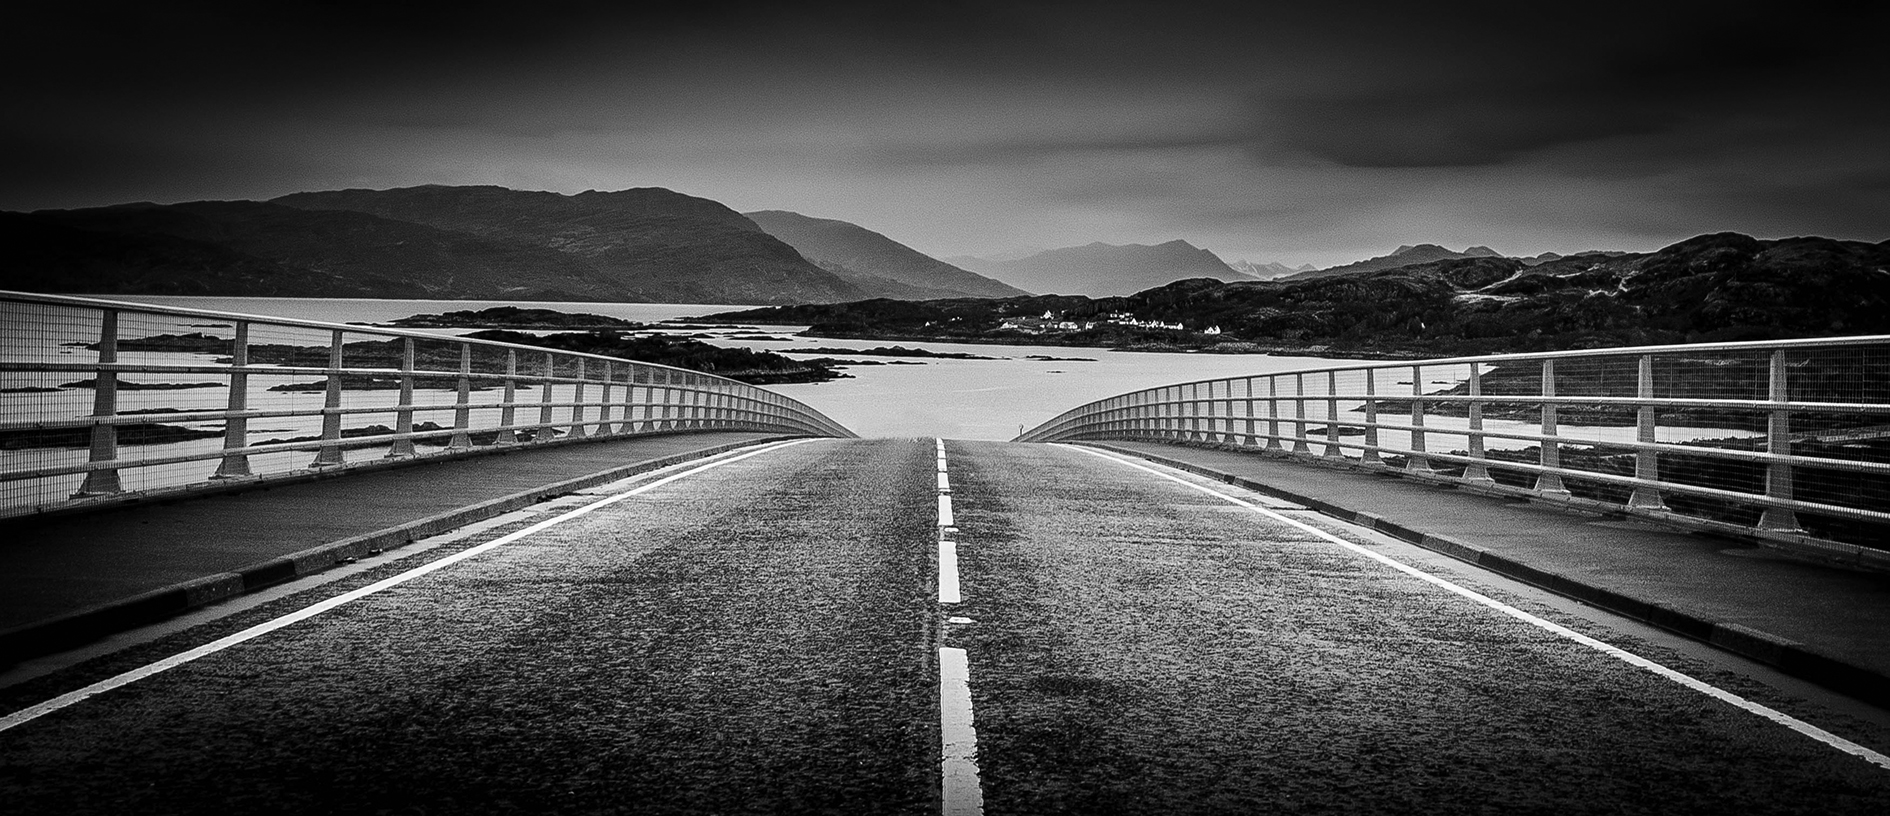 Over the Sea to Skye, Skye Bridge